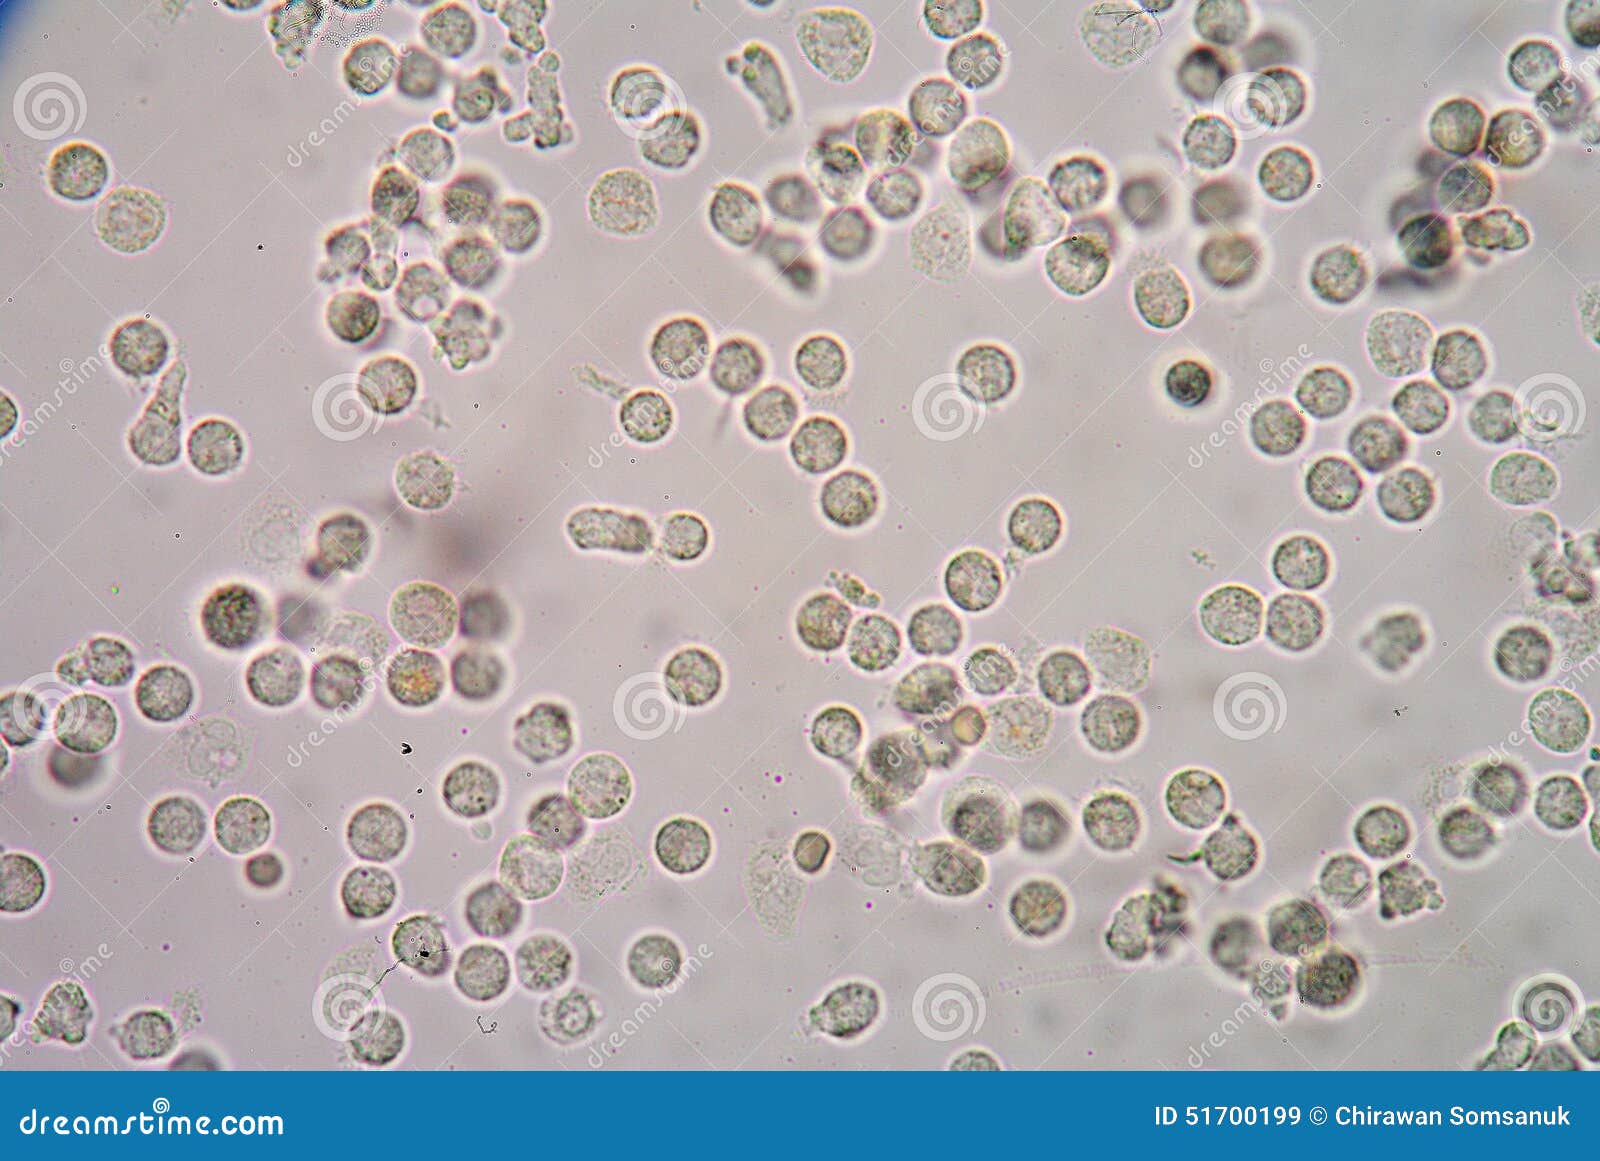 Микроскопическое исследование предстательной железы. Лейкоциты в секрете простаты микроскопия. Лецитиновые зерна микроскопия. Лецитиновые зерна и лейкоциты в простате. Лейкоциты в моче под микроскопом.